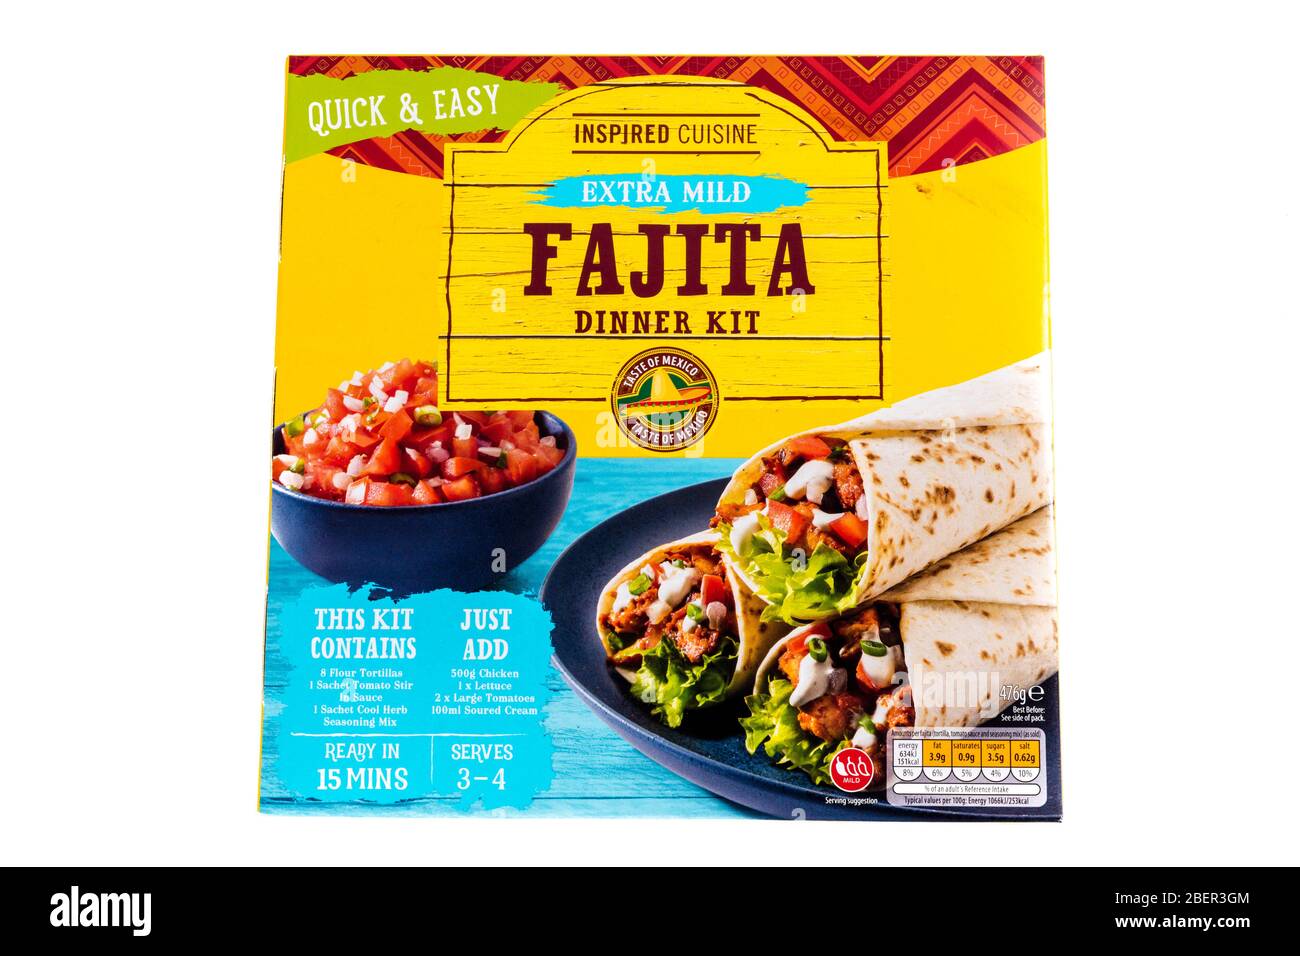 Fajita Mexican food kit, Fajita dinner kit, Fajita food kit, taste of Mexico food kit, food kit, dinner kit, Mexican dinner kit, Fajitas, fajita kit, Stock Photo